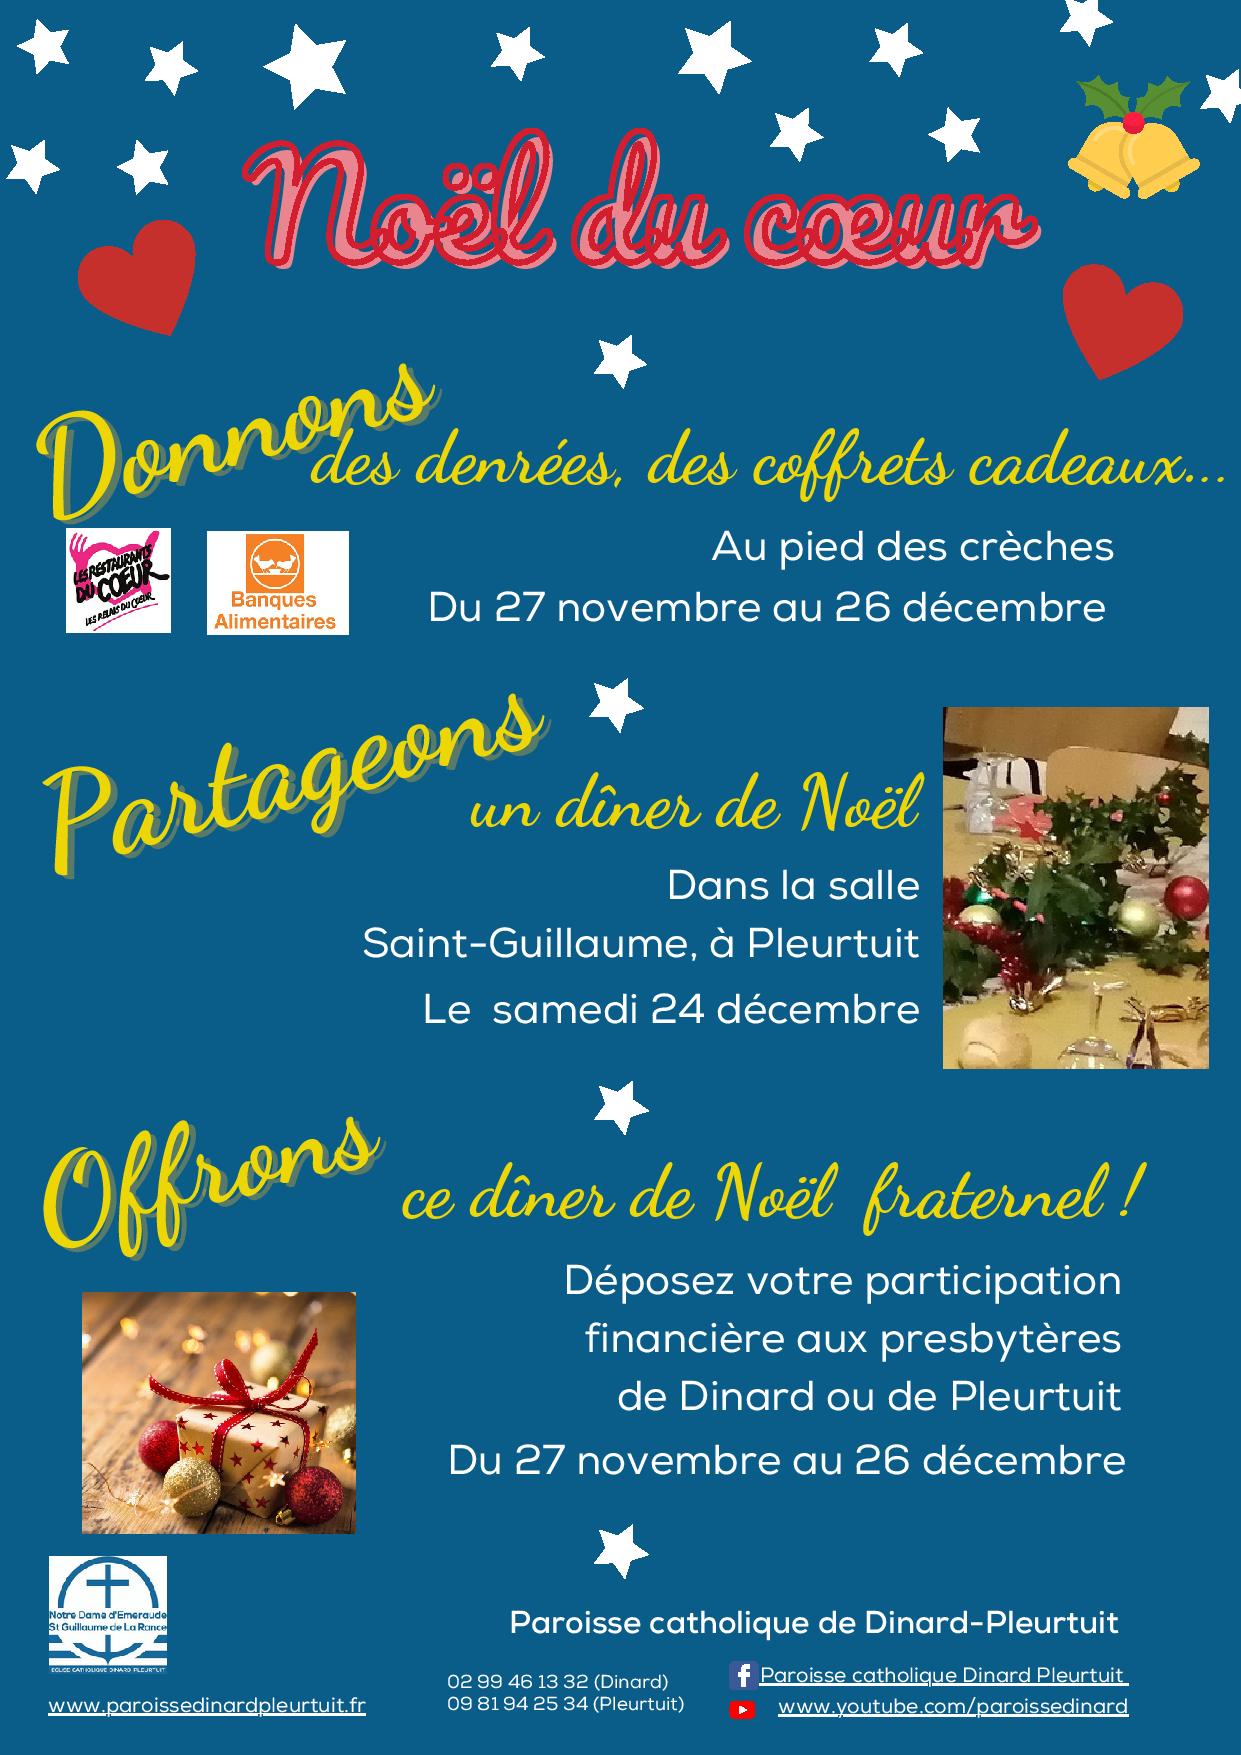 Noël du cœur, les propositions de la paroisse Dinard-Pleurtuit à Noël 2022